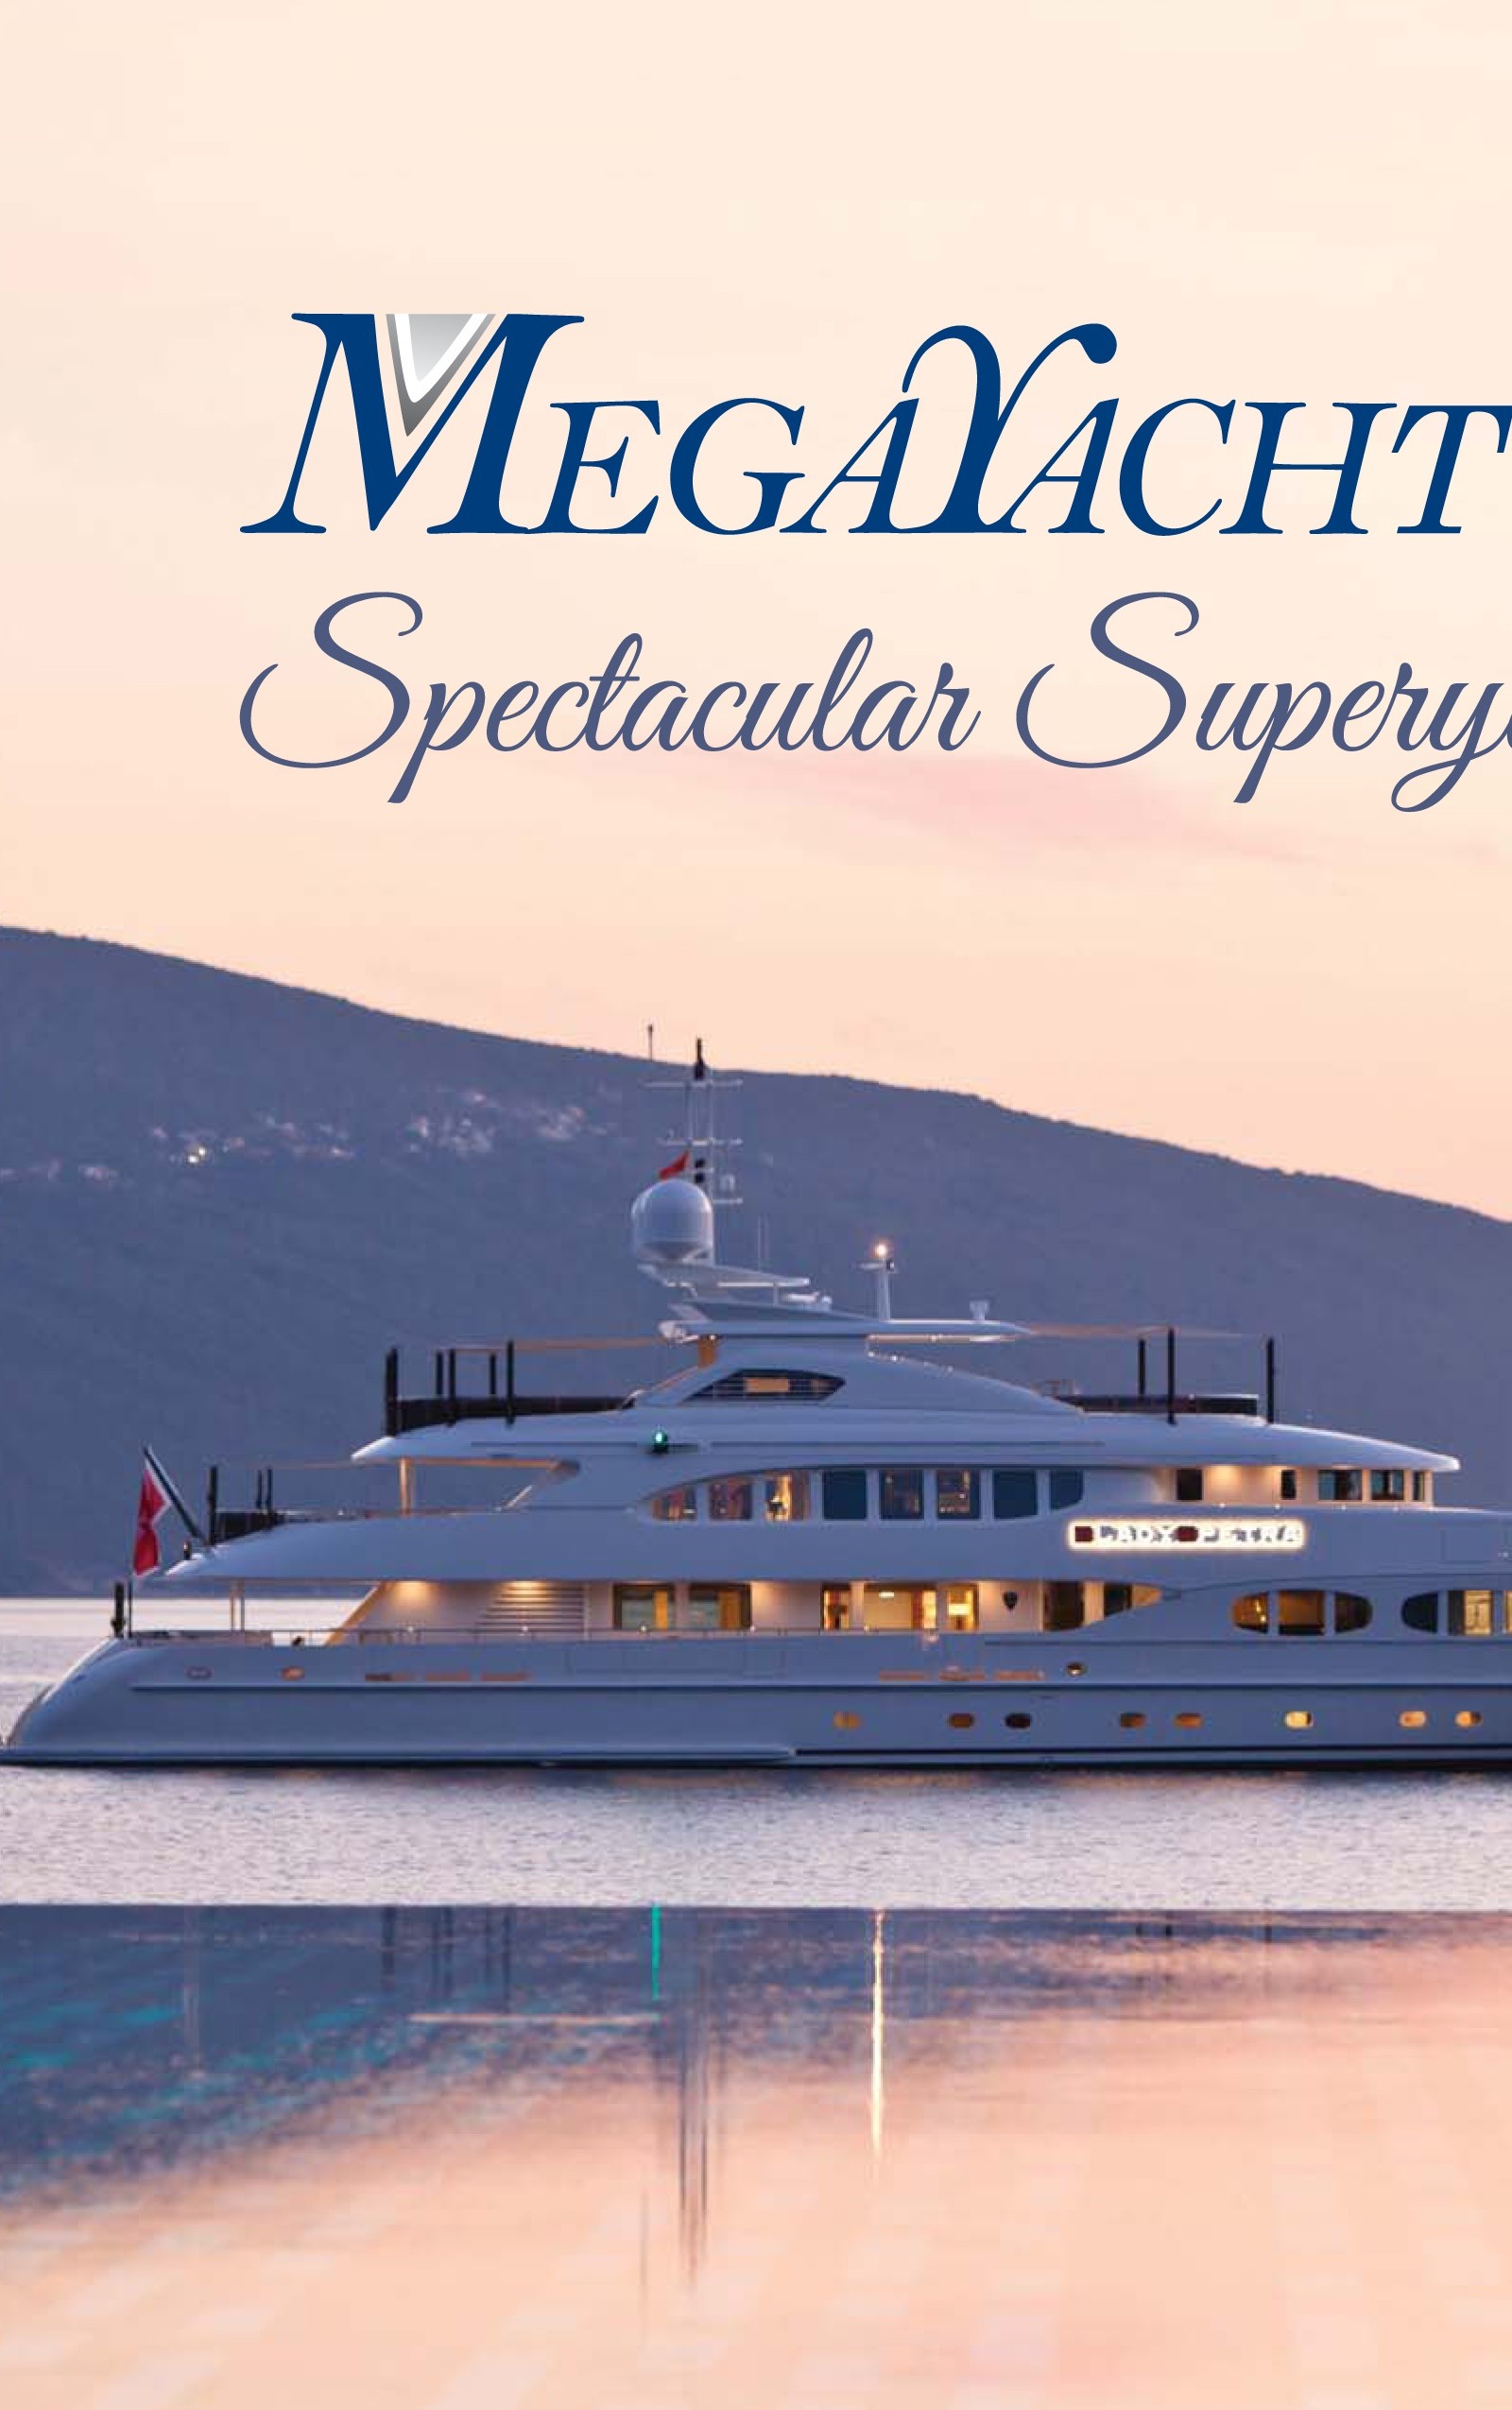 MegaYacht News' Annual Calendar: Spectacular Superyachts 2014